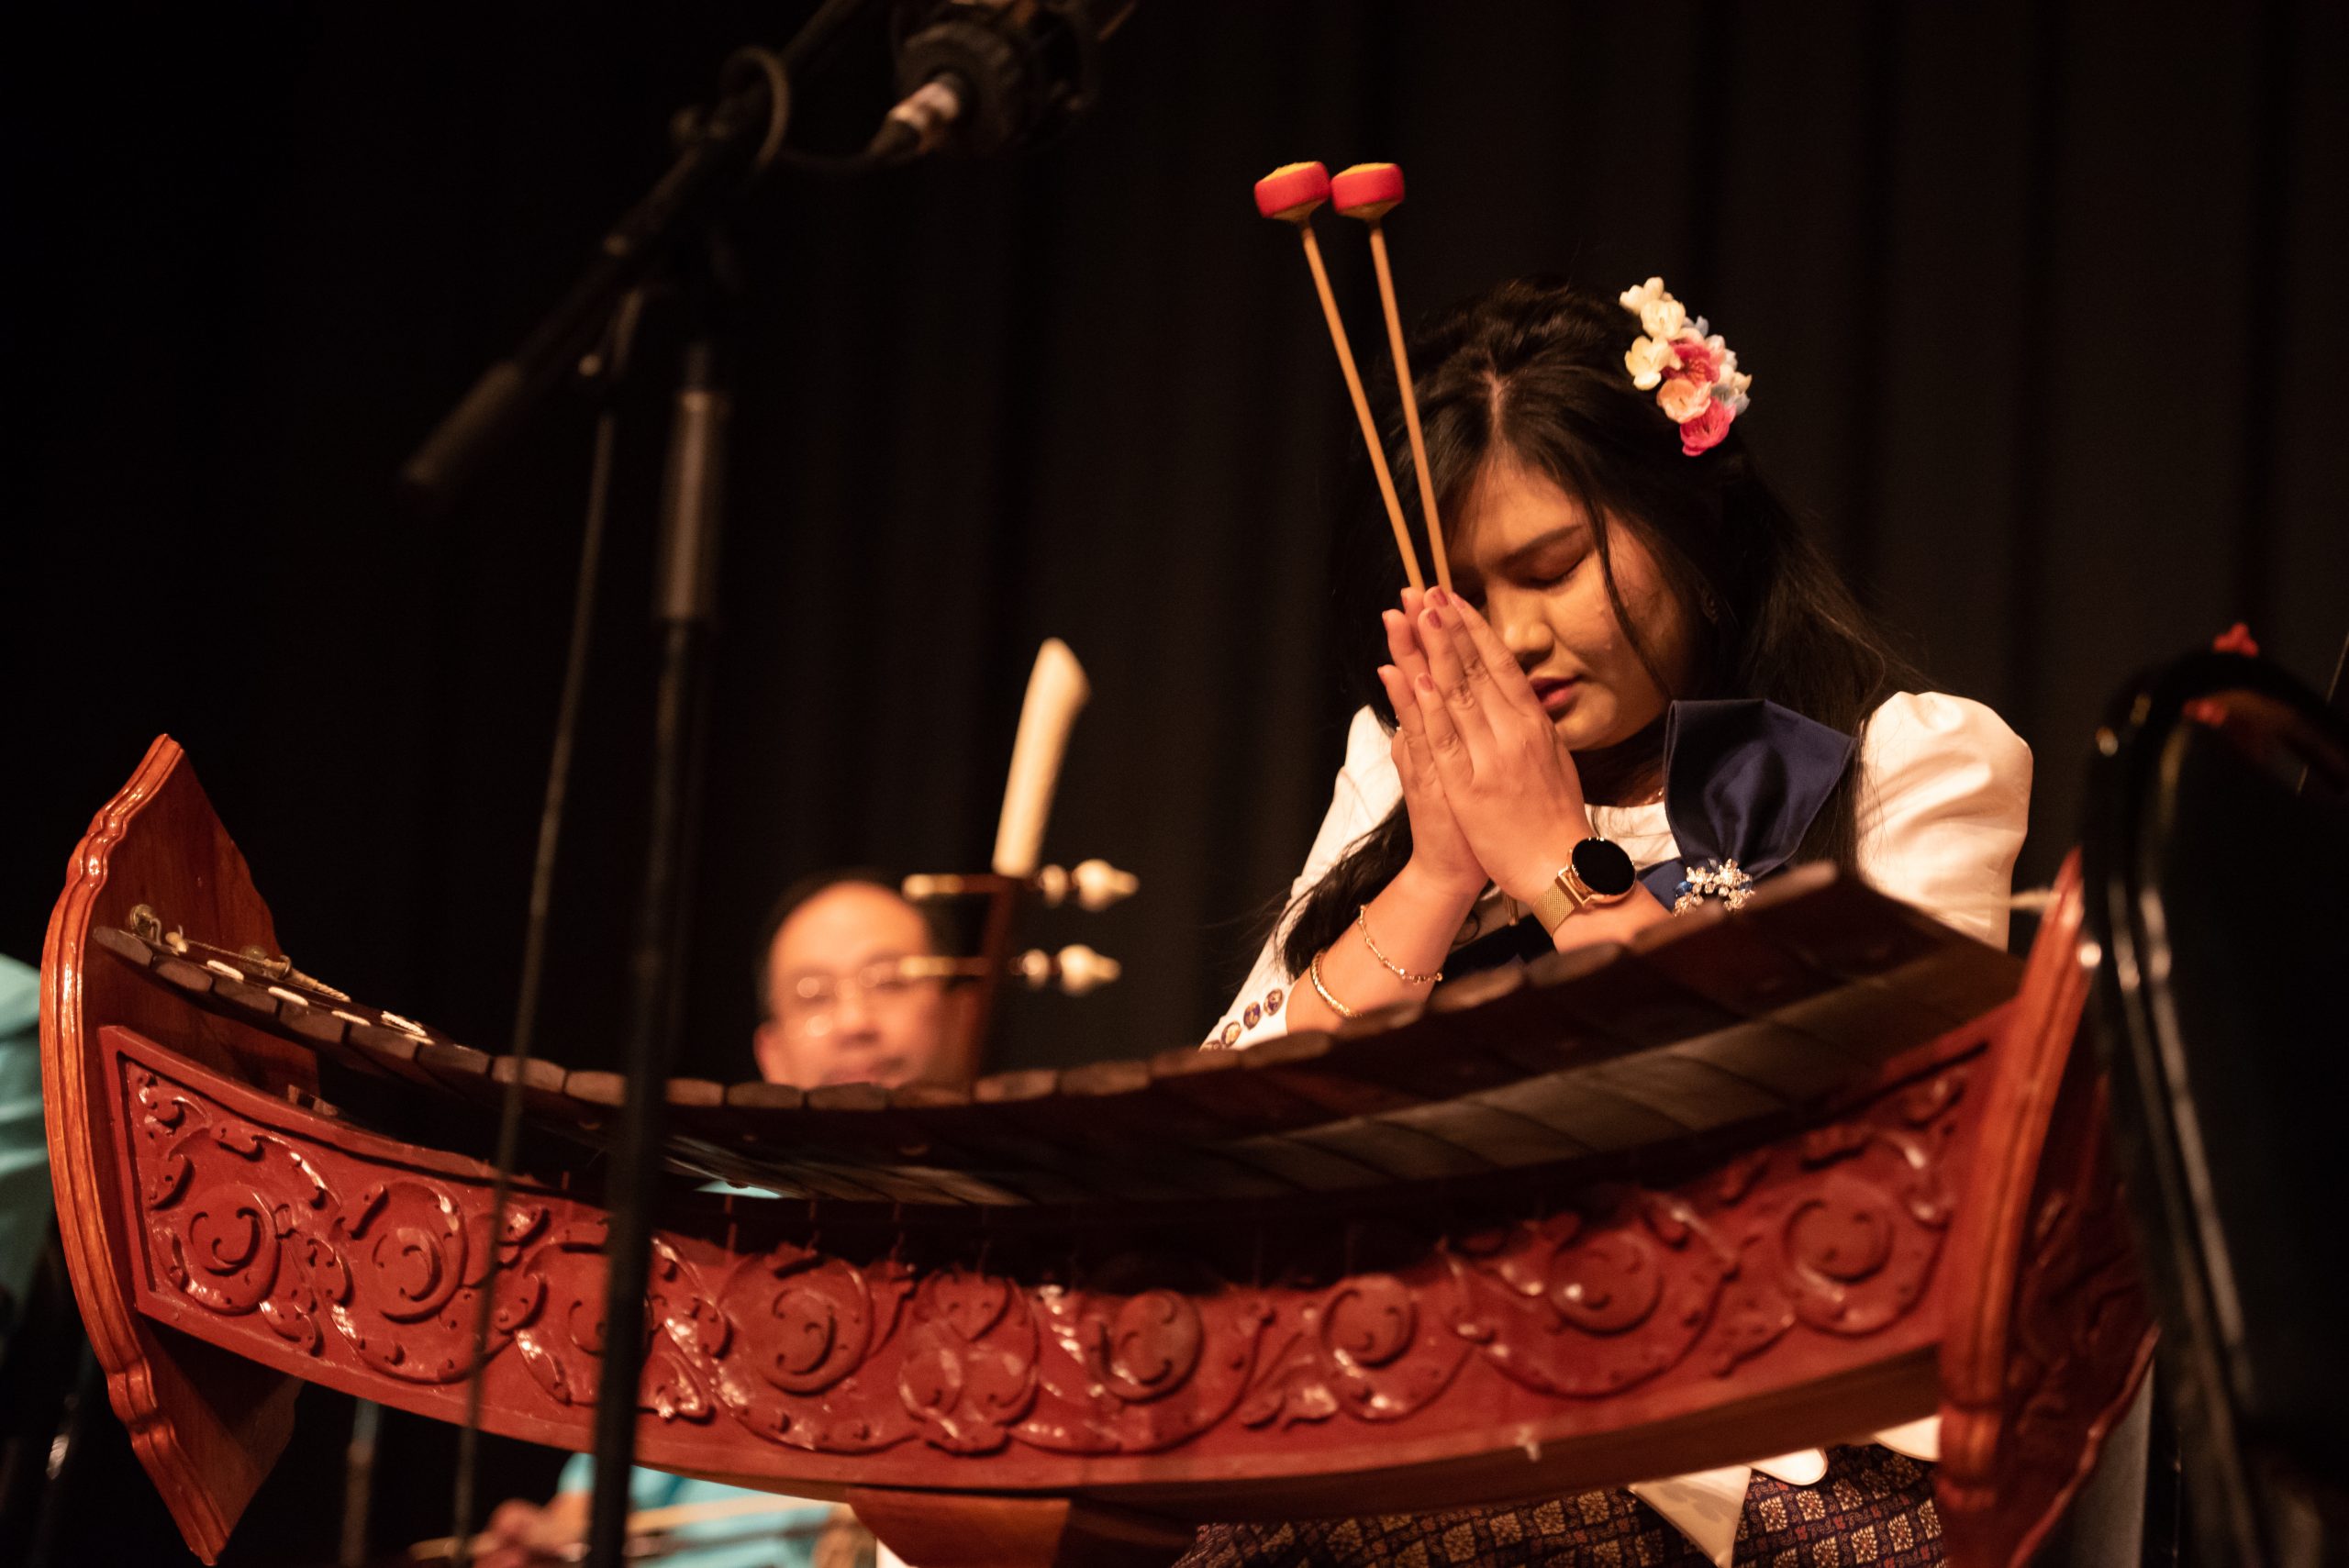 Asian women praying with instrument mallets praying